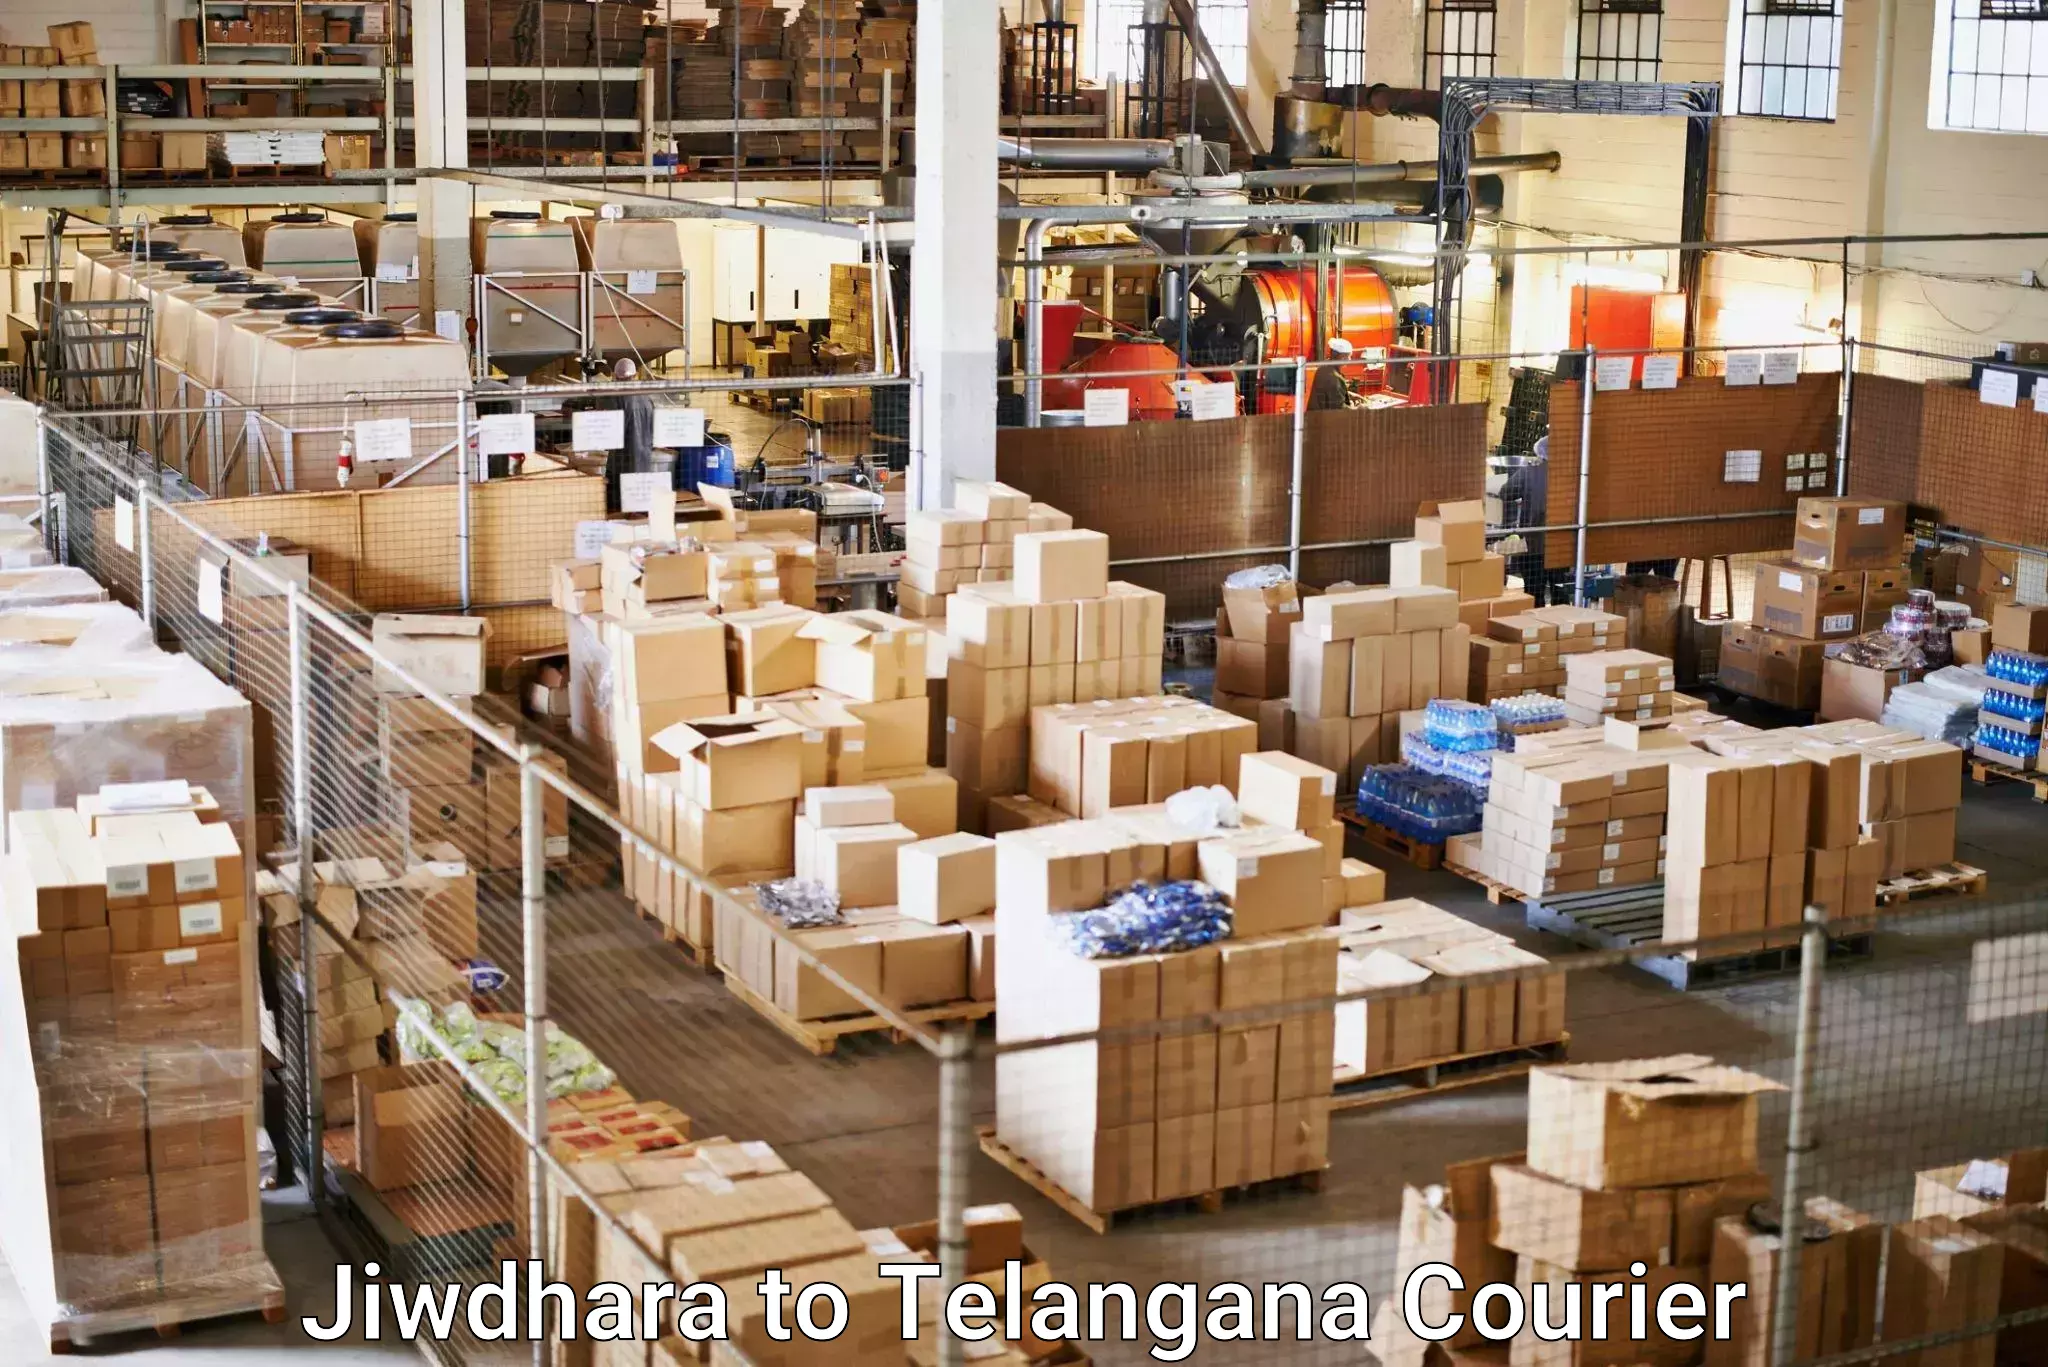 Customized shipping options Jiwdhara to Mahabubnagar